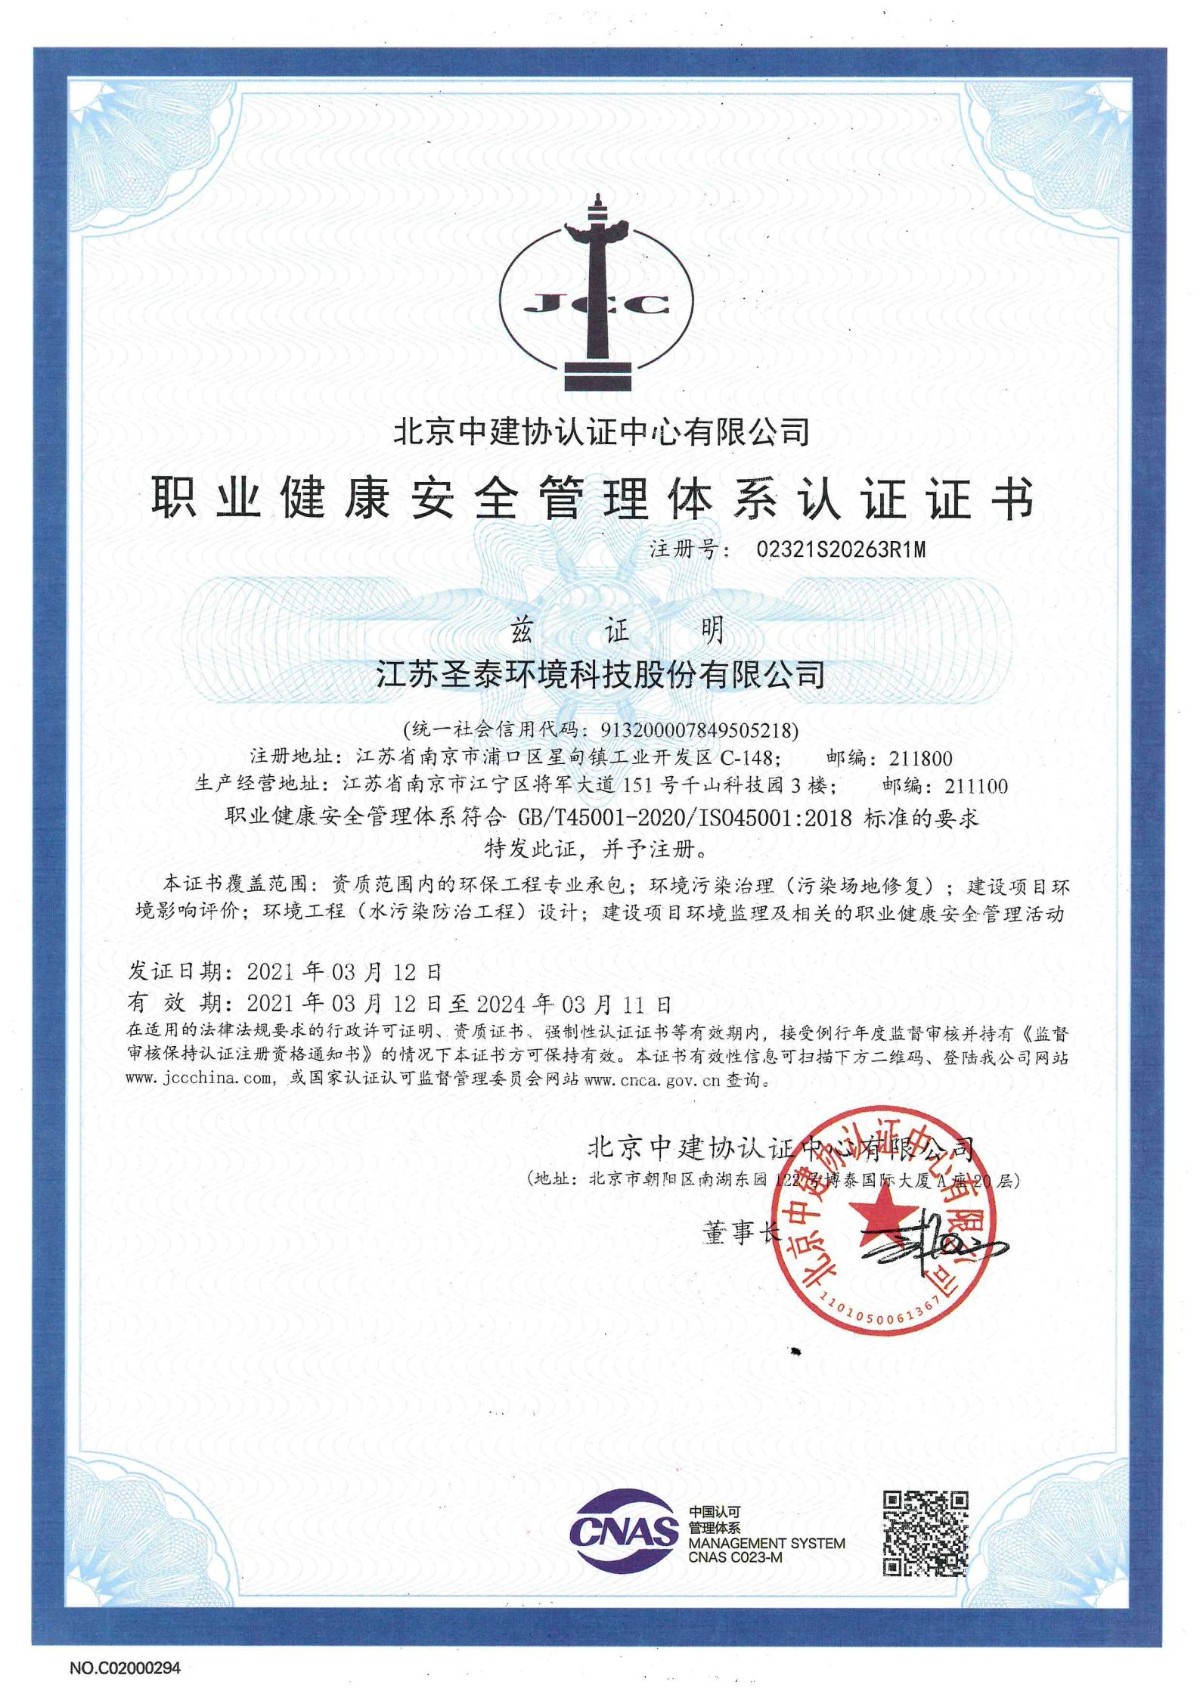 职业健康管理证书正本-中文（2021.3.12—2024.3.11）_00.jpg